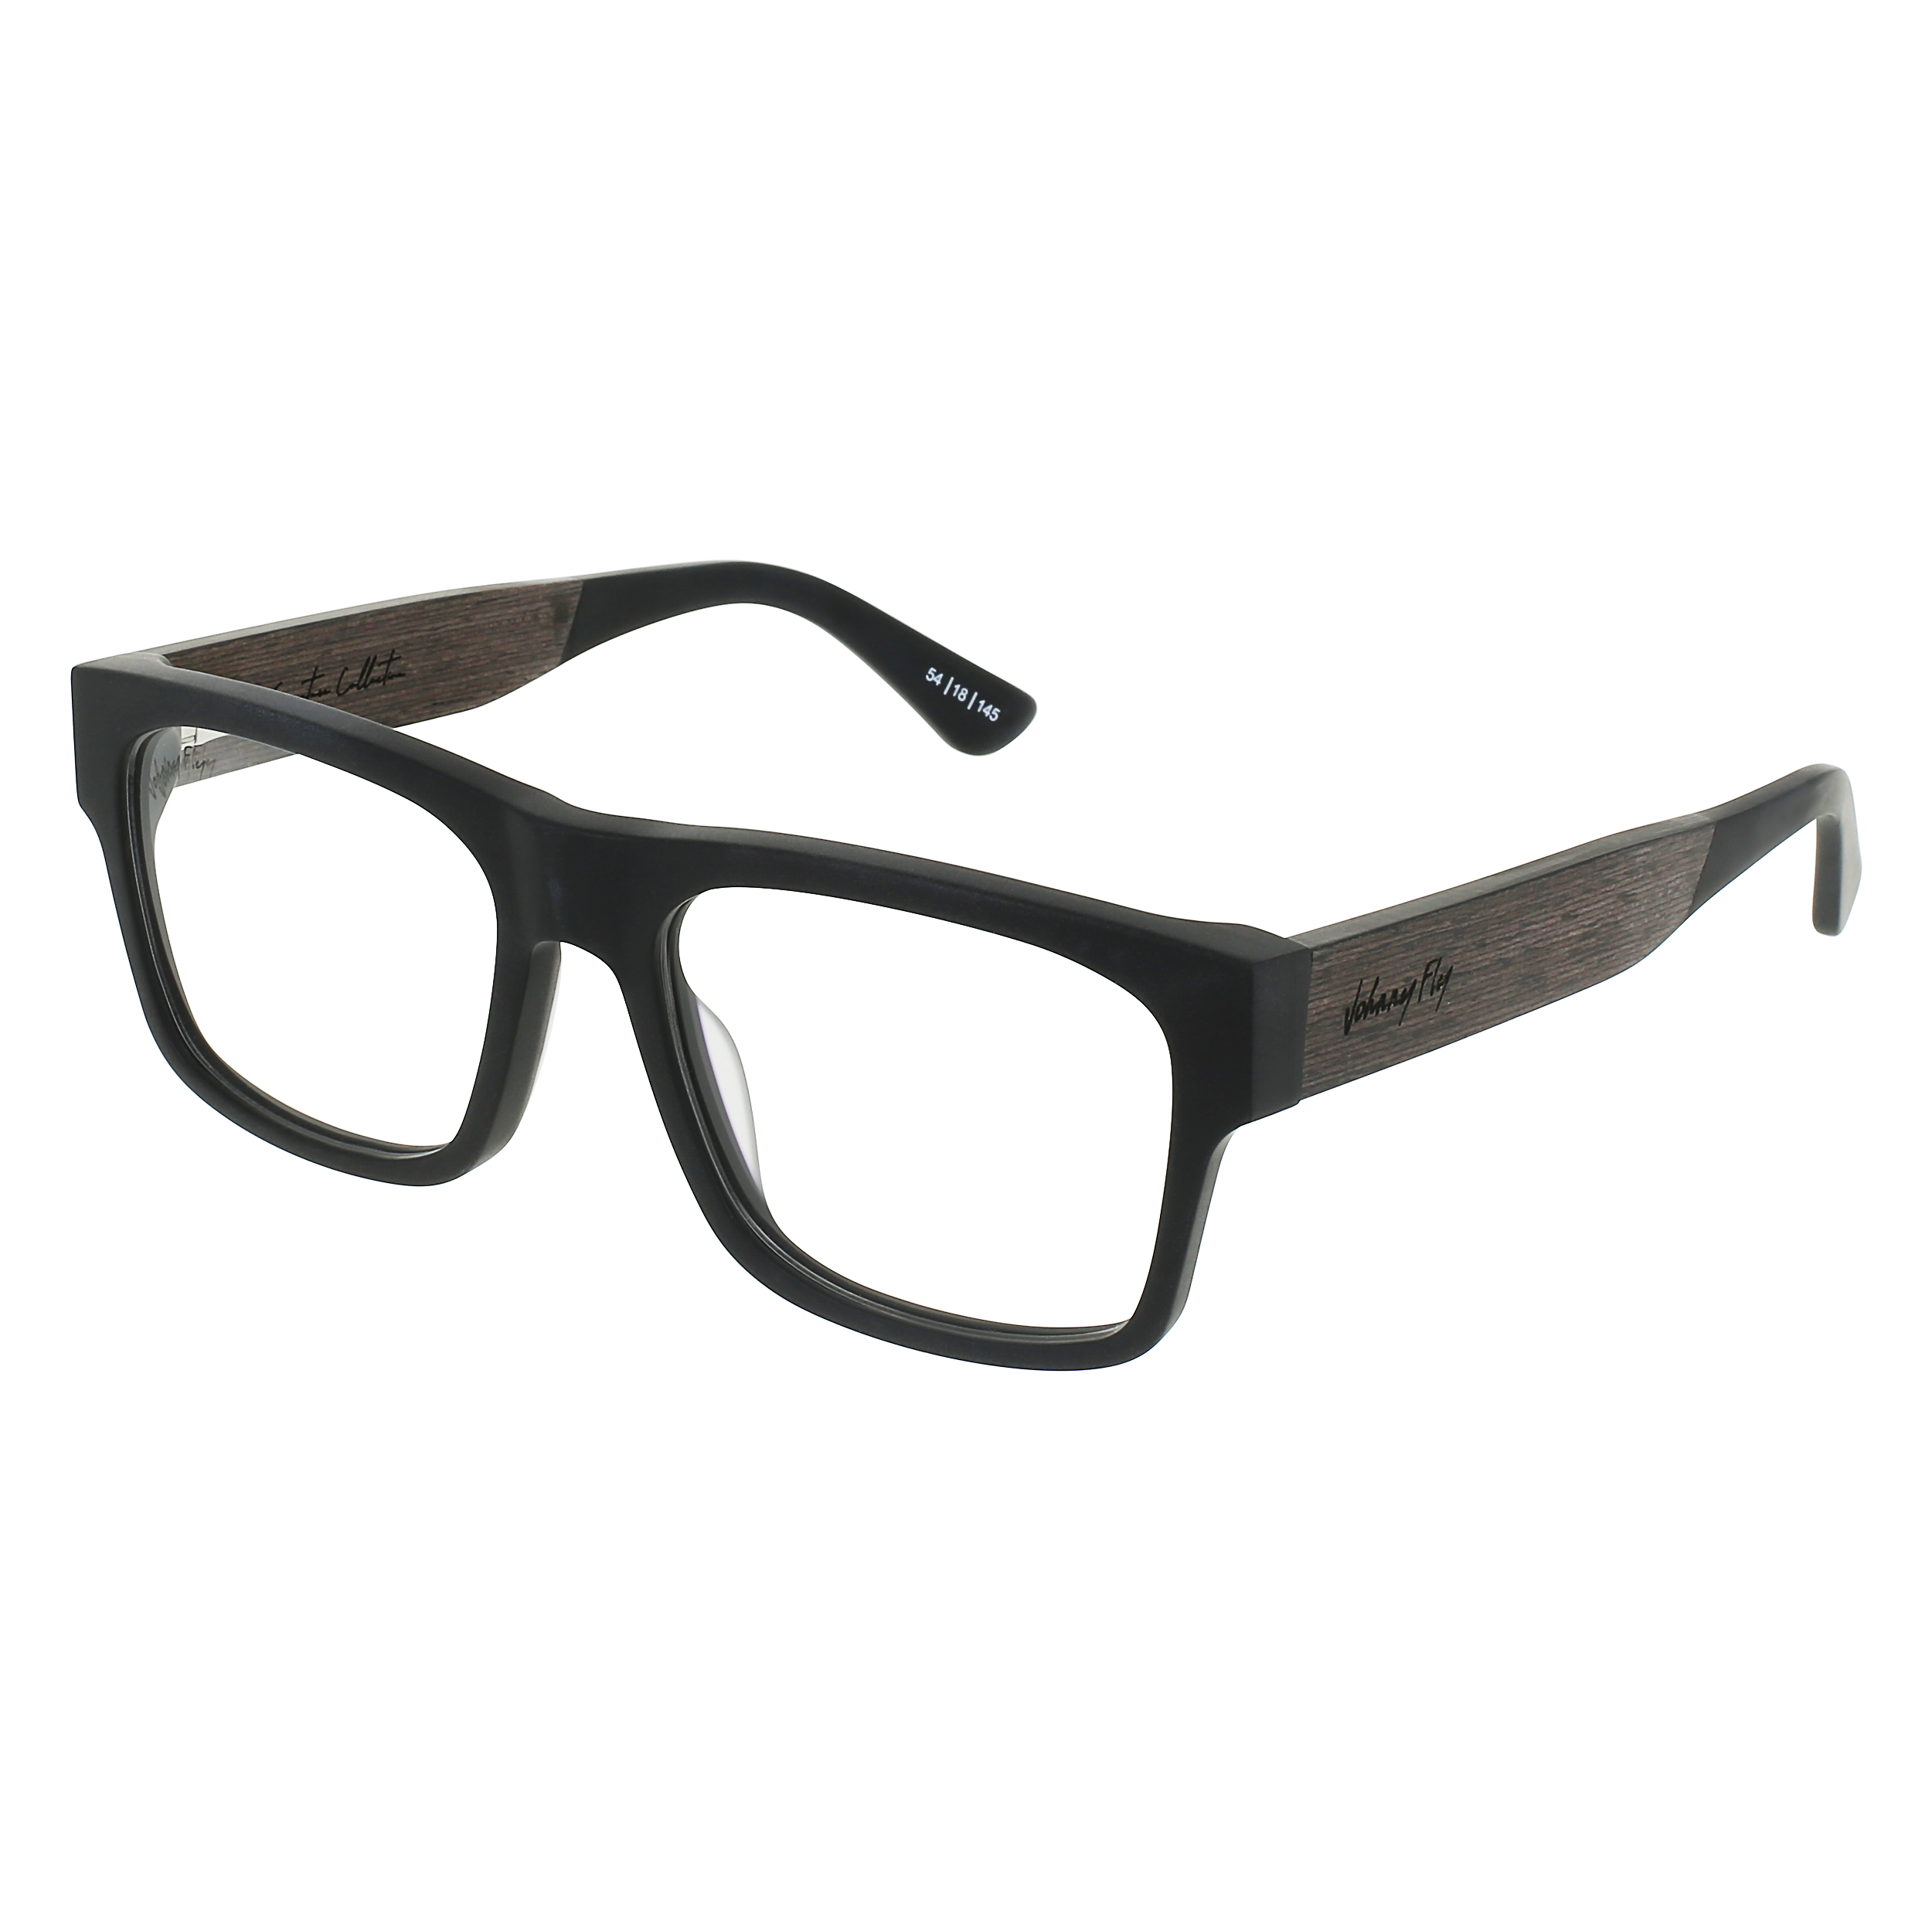 ARROW Eyeglasses Frame - Matte Black- Johnny Fly | ARR-MBL-RX-EBN | | 